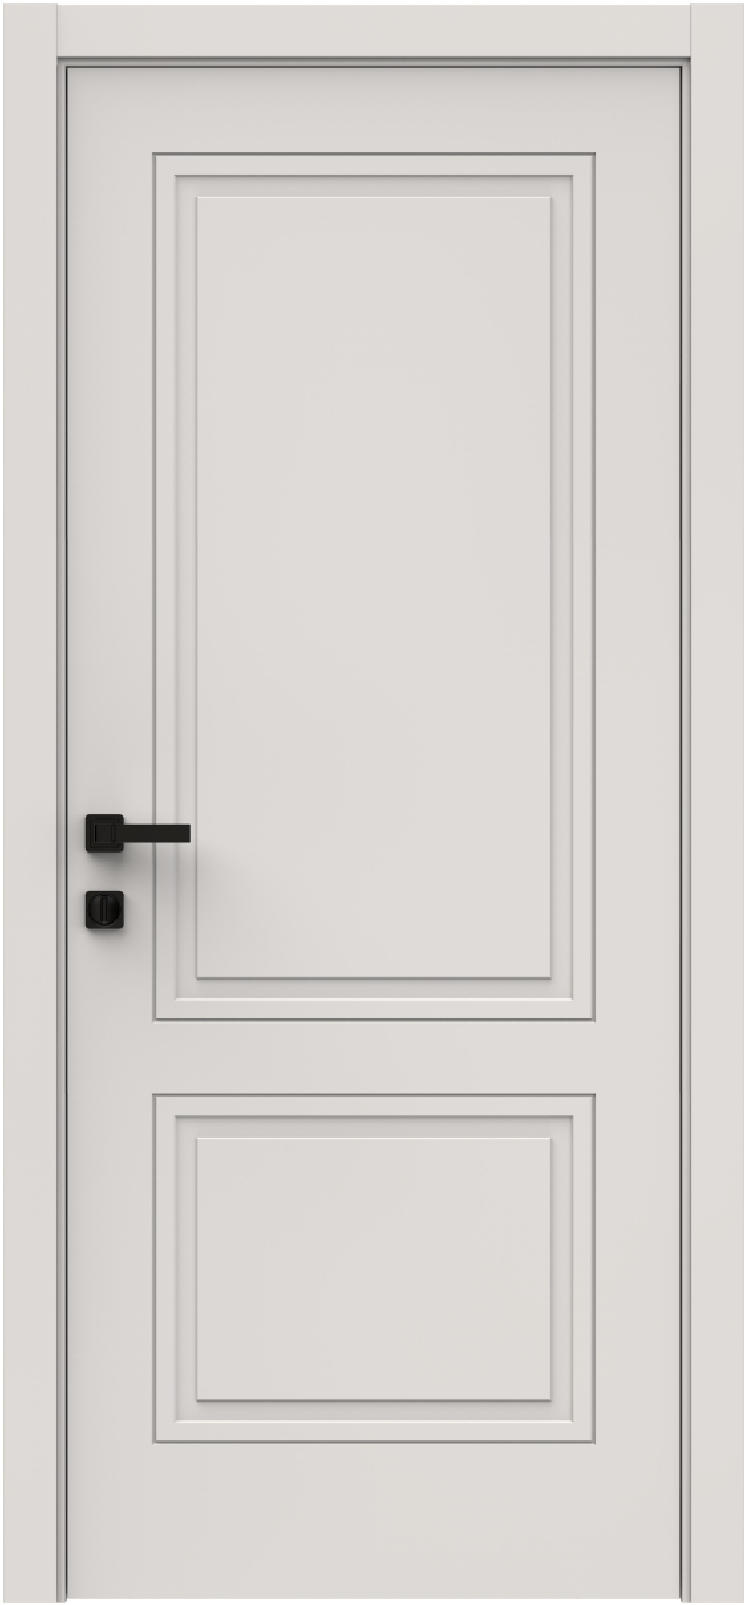 Questdoors Межкомнатная дверь QID2, арт. 26322 - фото №1